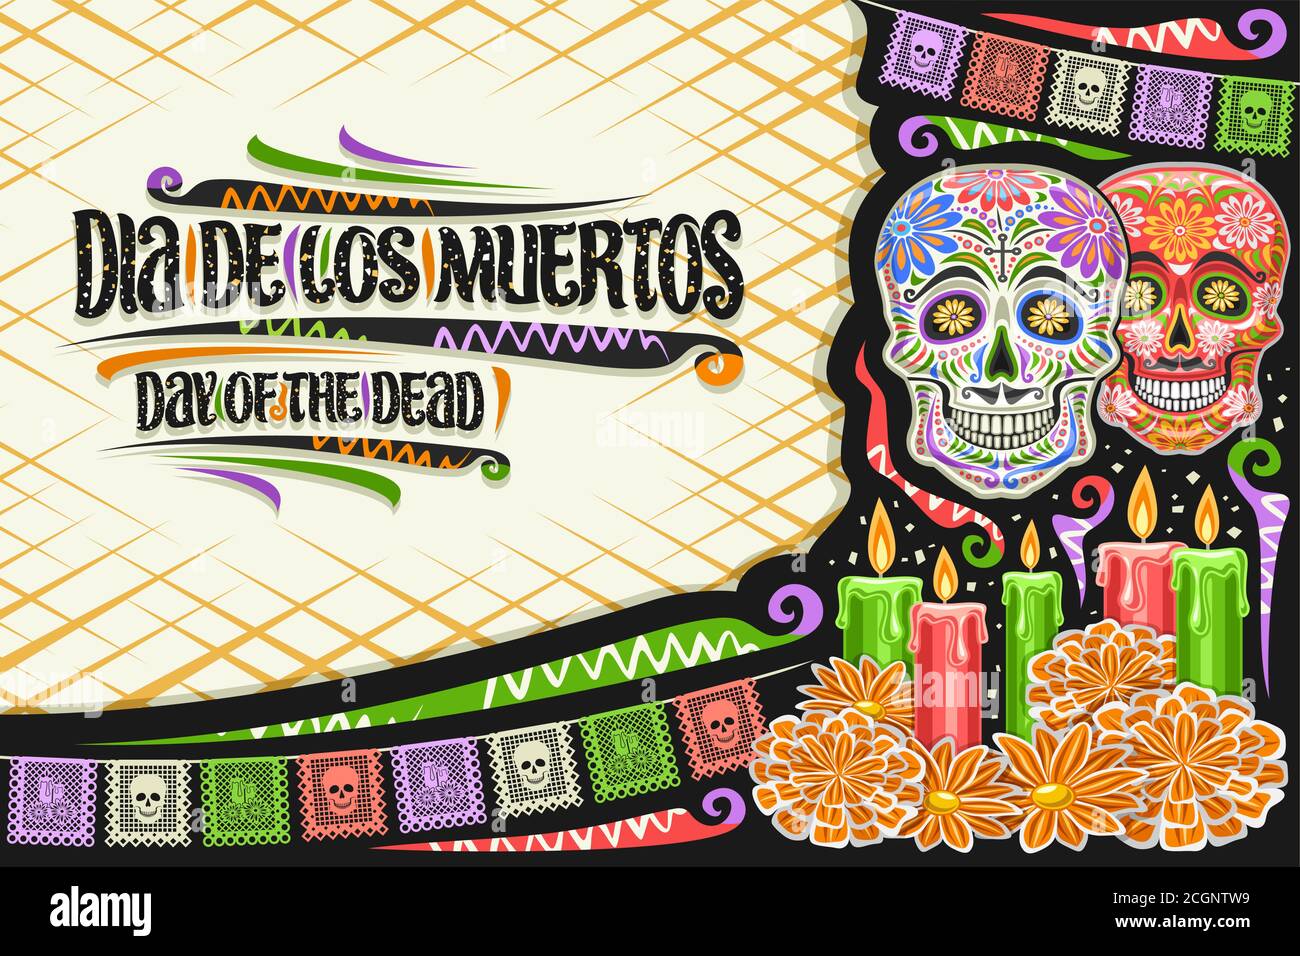 Vektor-Grußkarte für Dia de los Muertos mit Kopierfläche, dekorativ geschnittenem Papier-Layout mit Abbildung von Totenköpfen, bunten Fahnen und einzigartigem Brief Stock Vektor